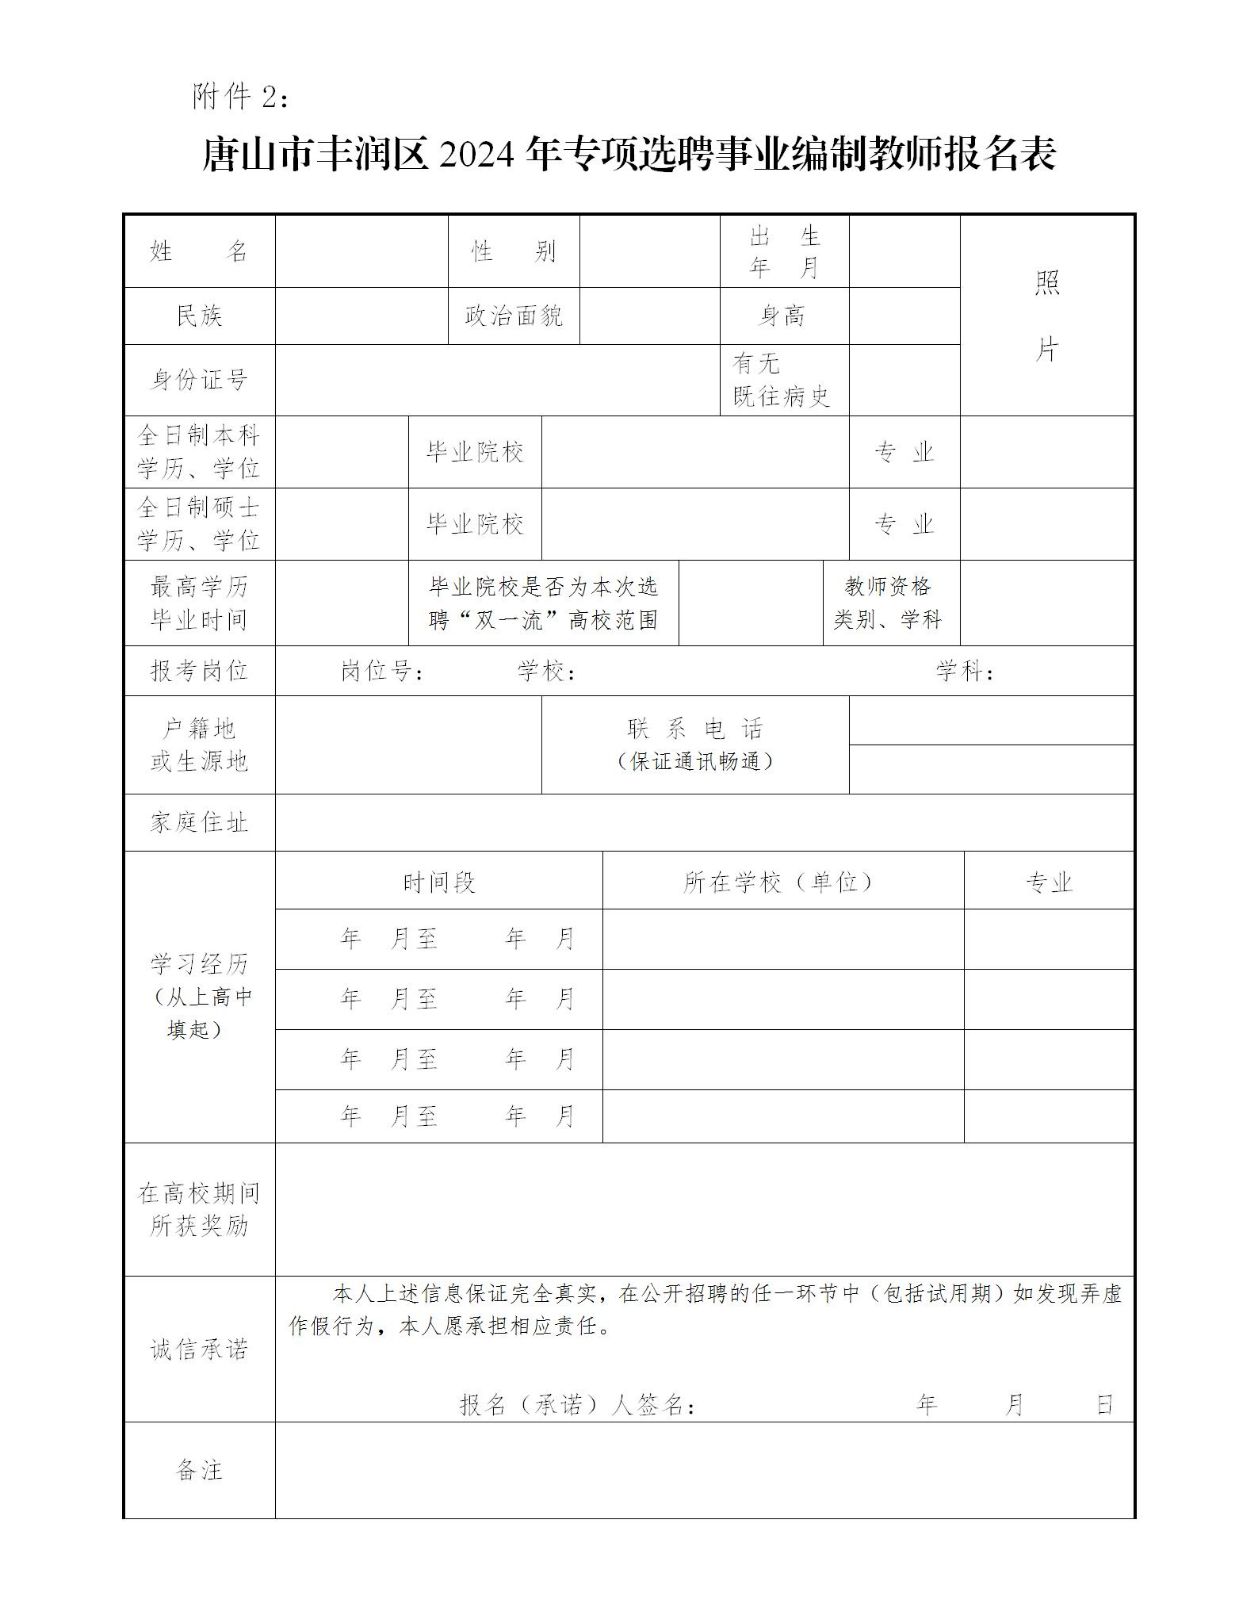 附件2：《唐山市丰润区2024年专项选聘事业编制教师报名表》.jpg